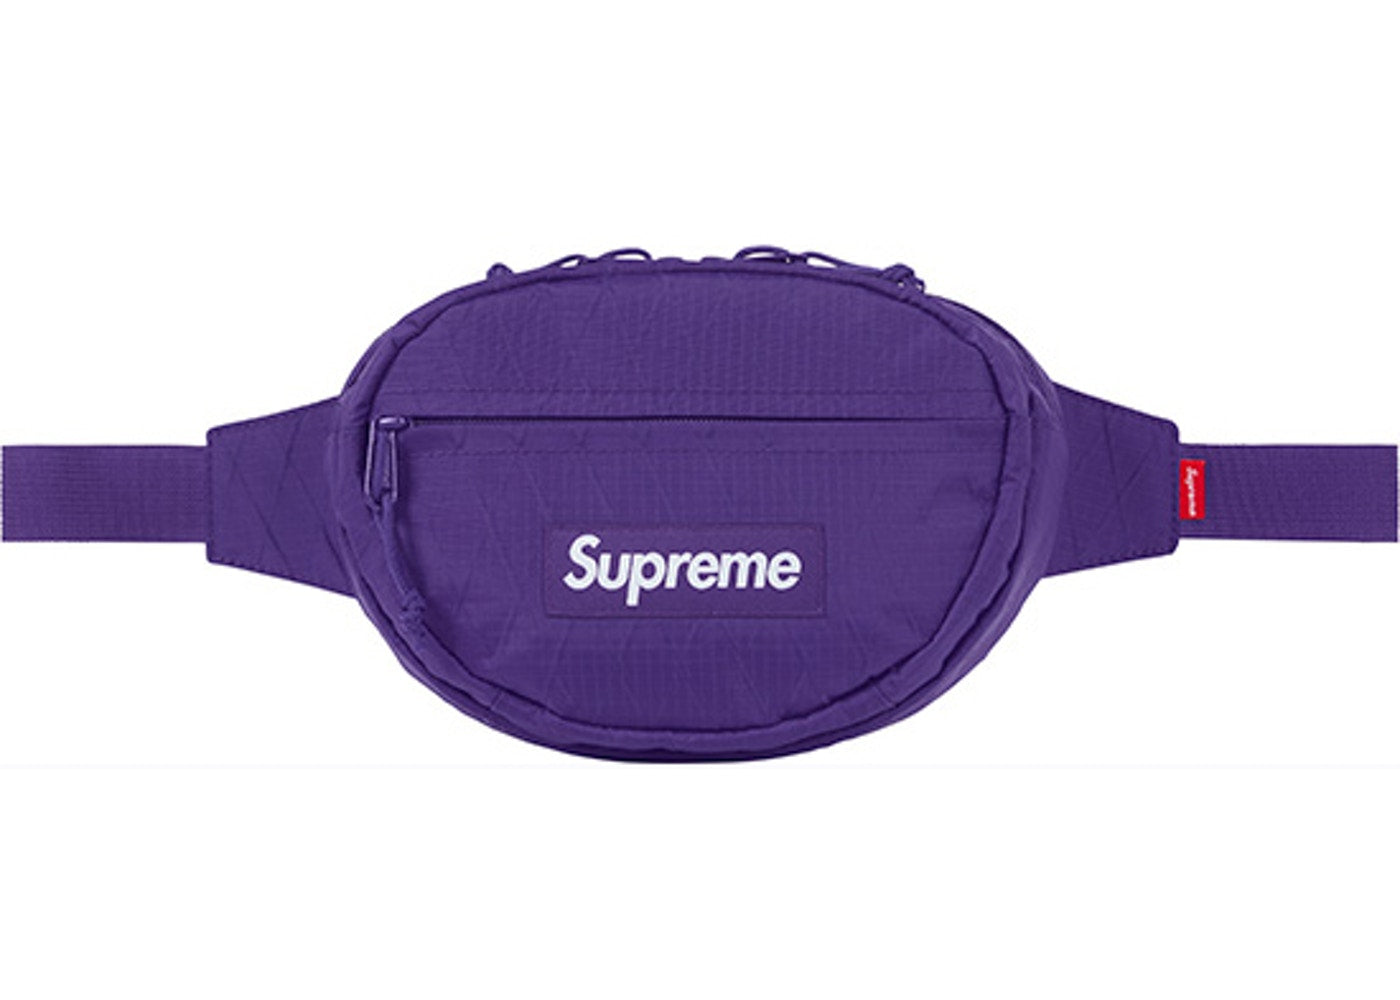 supreme waist bag fanny pack